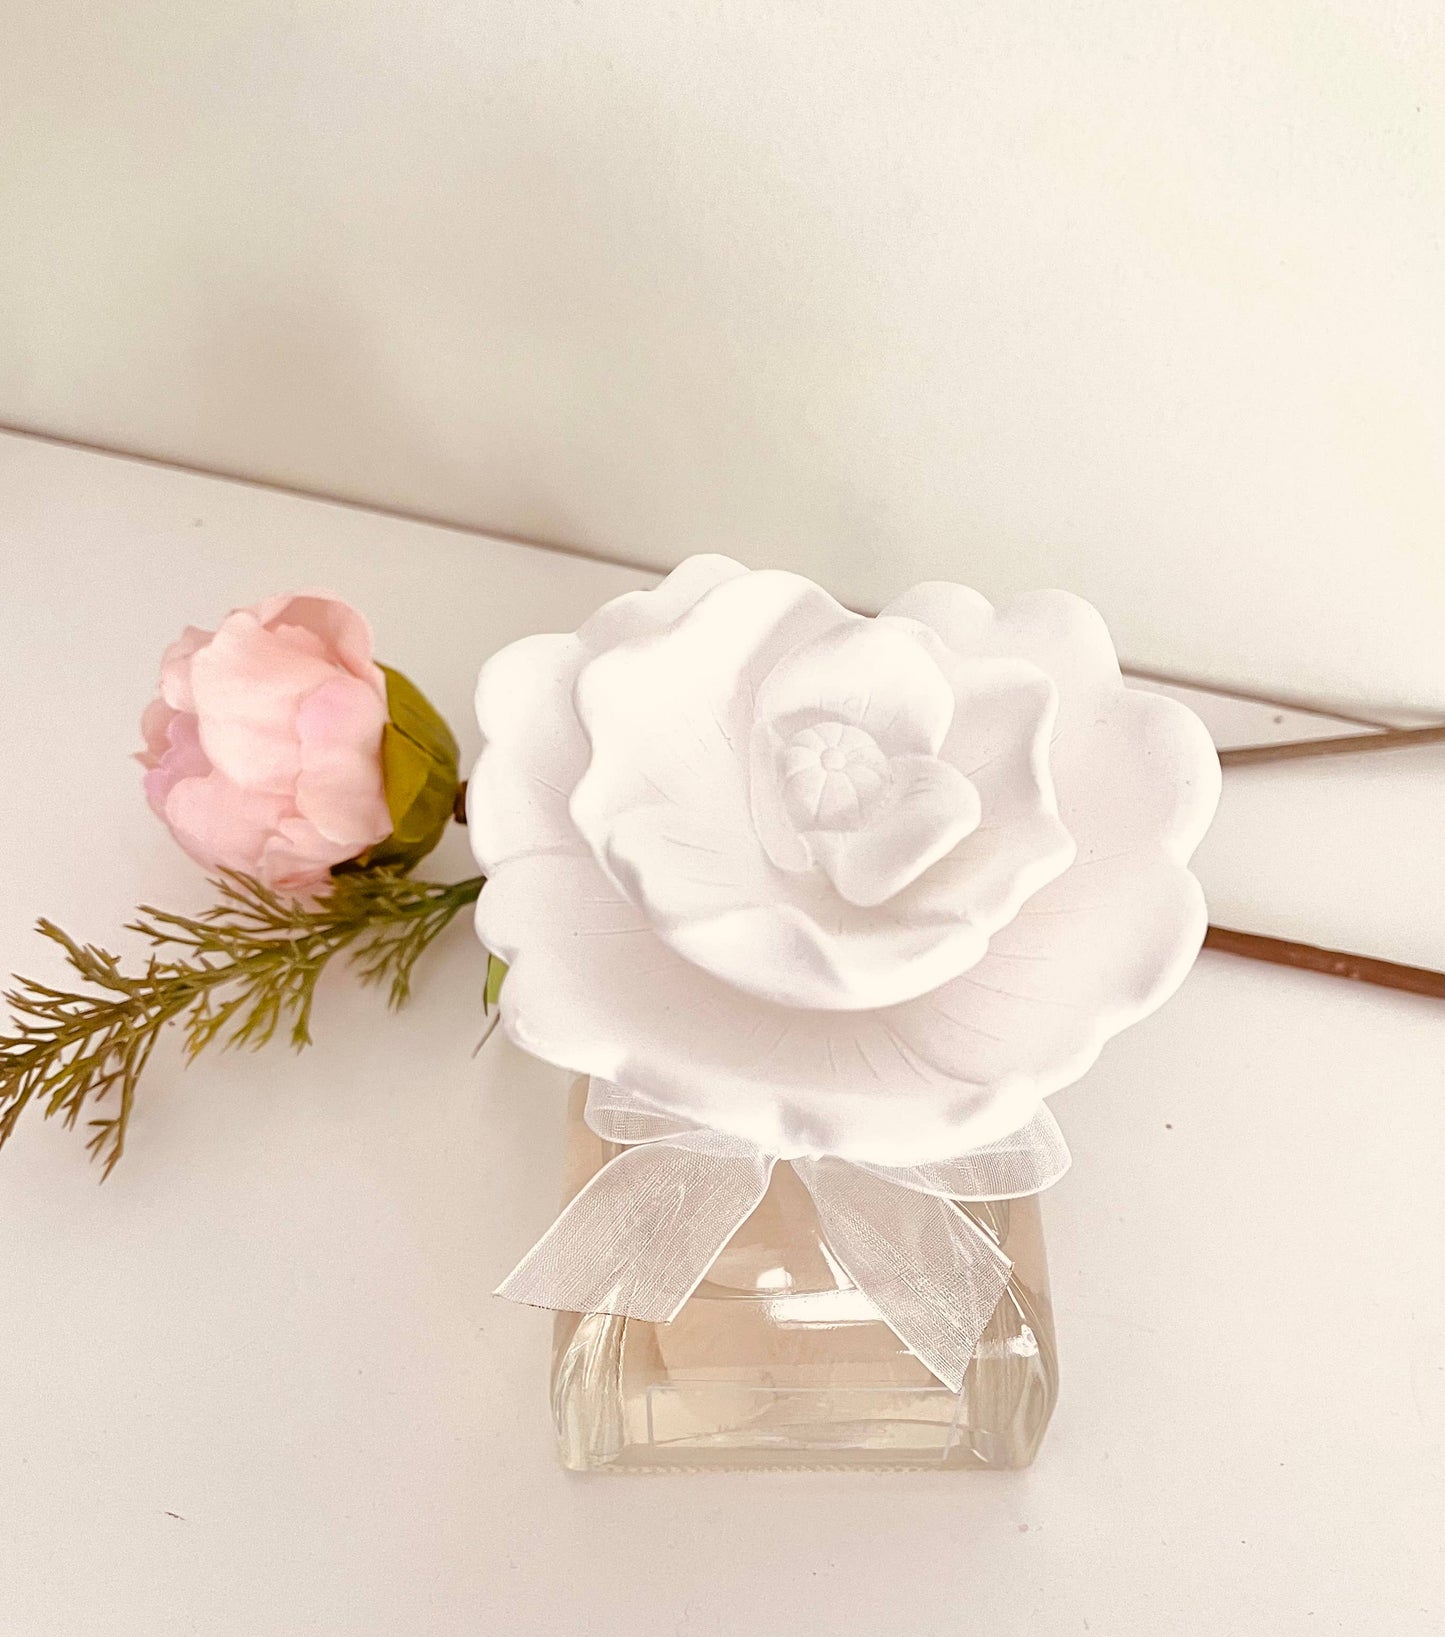 Rose Ceramic Flower Diffuser Set